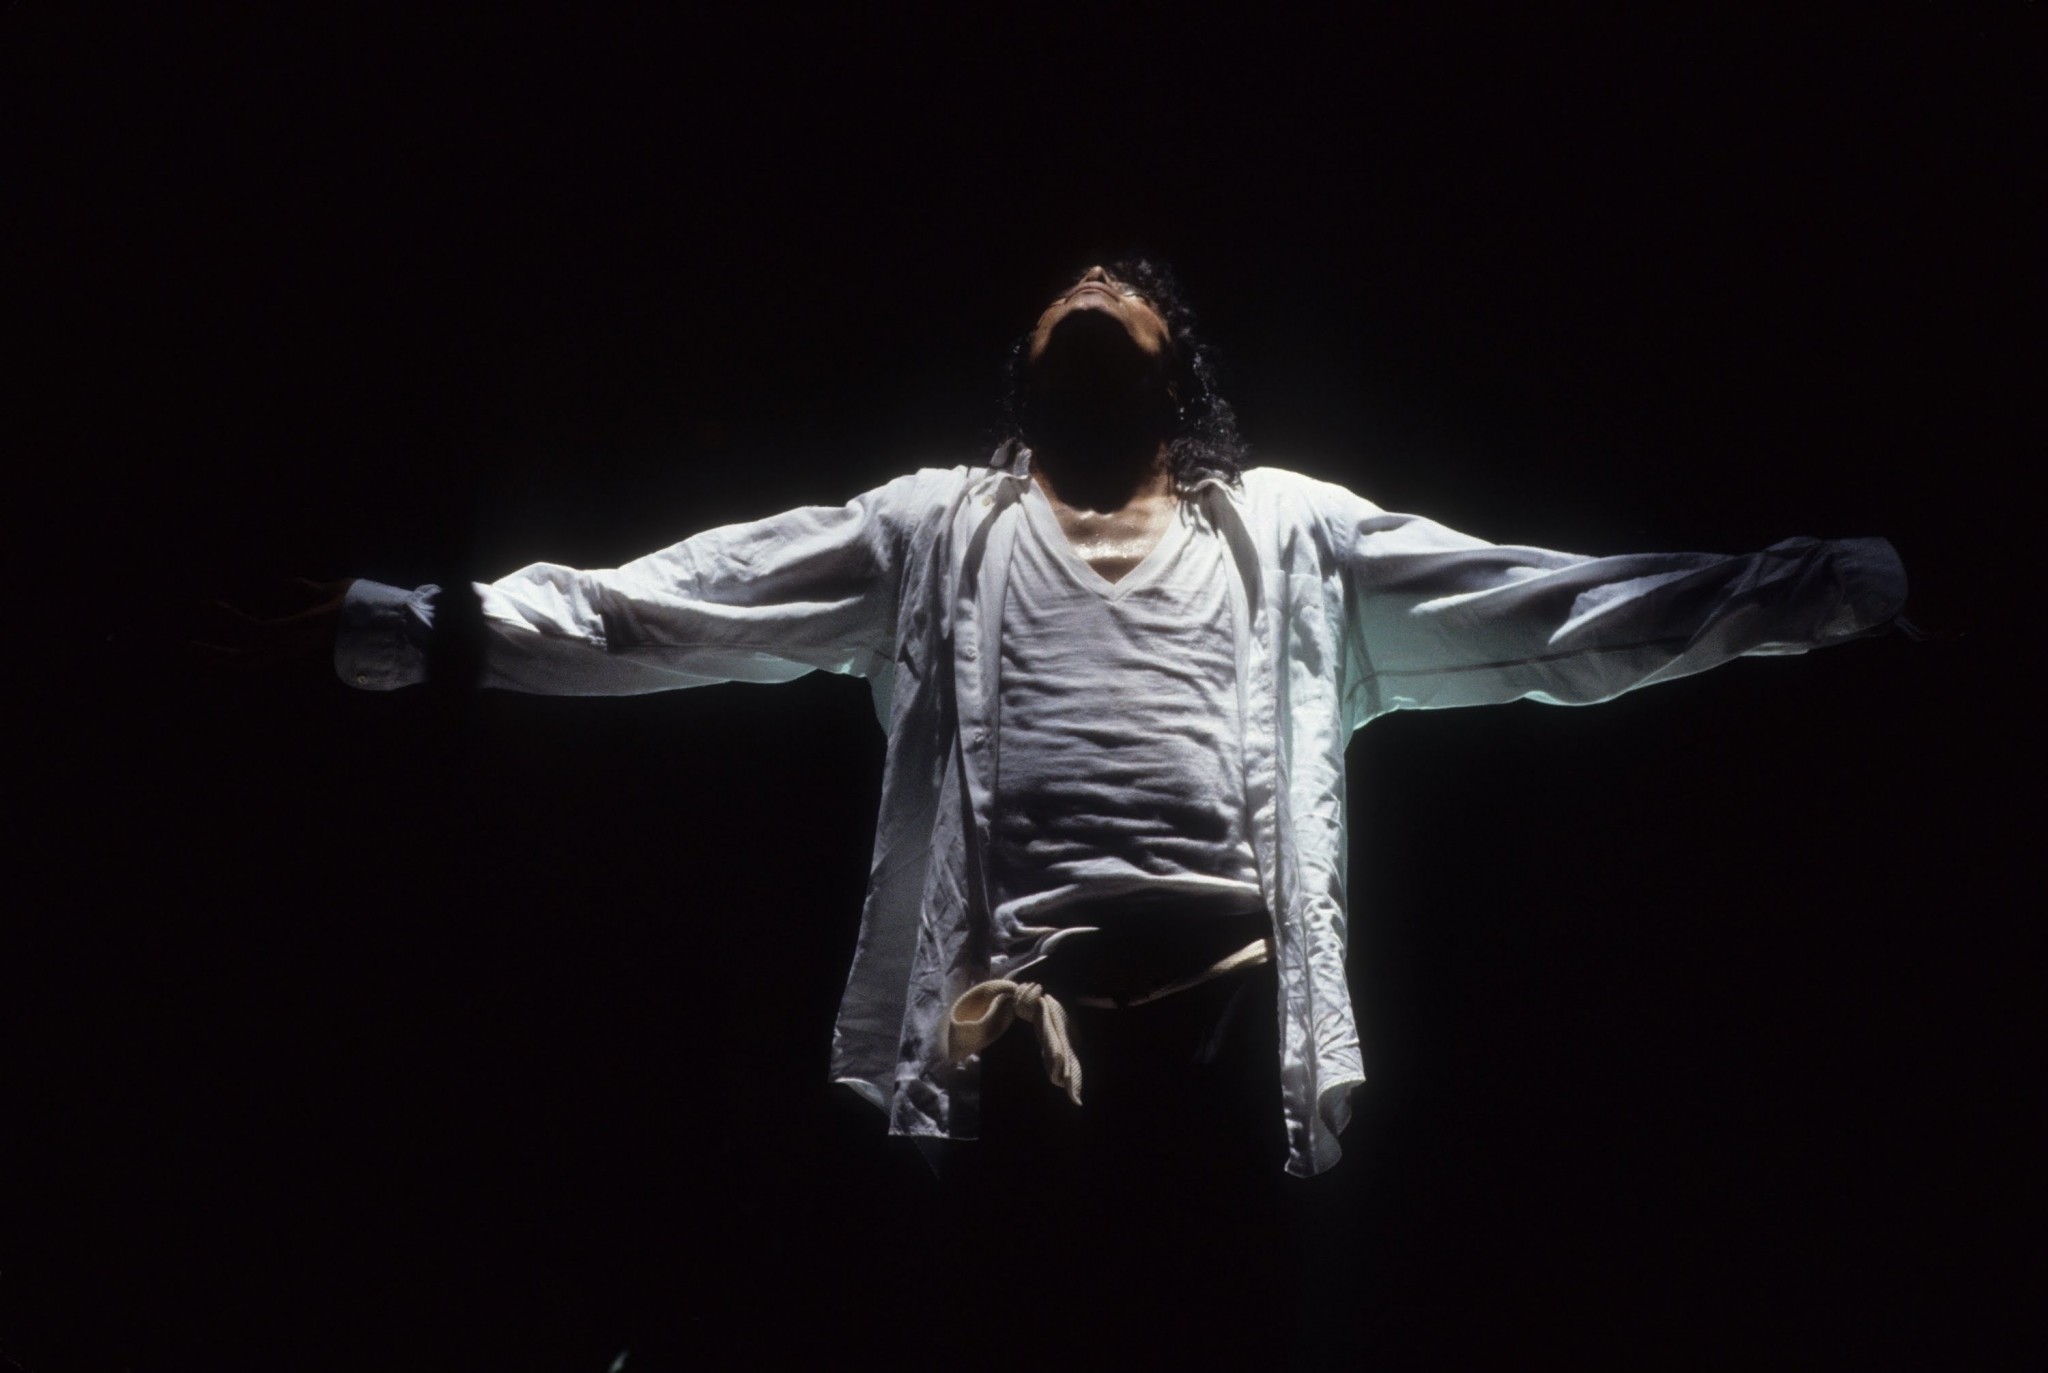 마이클 잭슨 라이브 배경 화면,공연,어둠,행위 예술,인간의 몸,행사